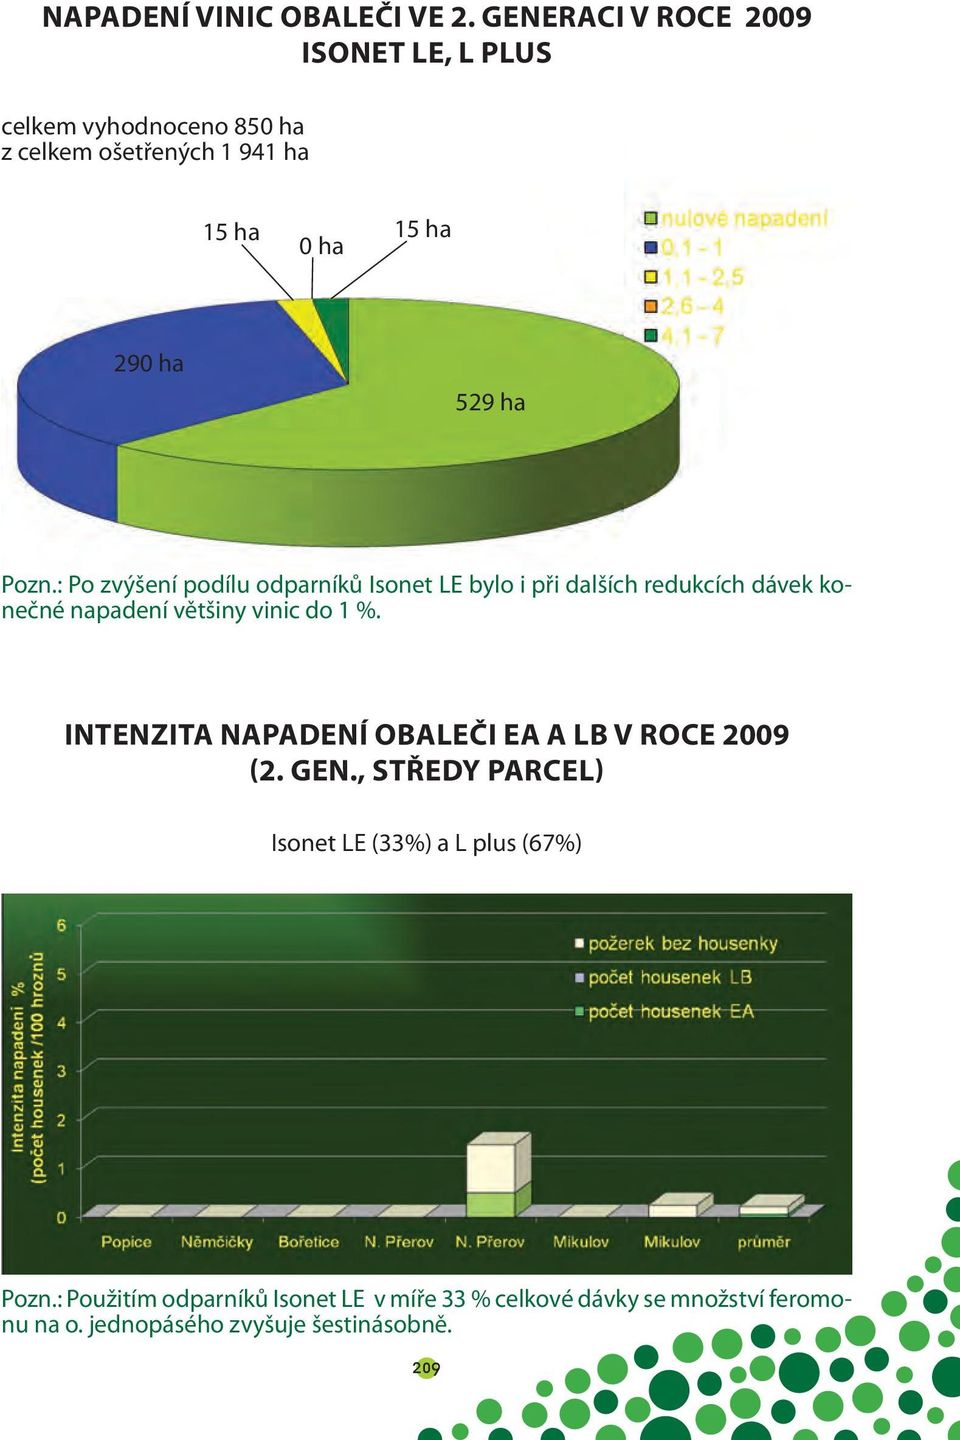 Pozn.: Po zvýšení podílu odparníků Isonet LE bylo i při dalších redukcích dávek konečné napadení většiny vinic do 1 %.